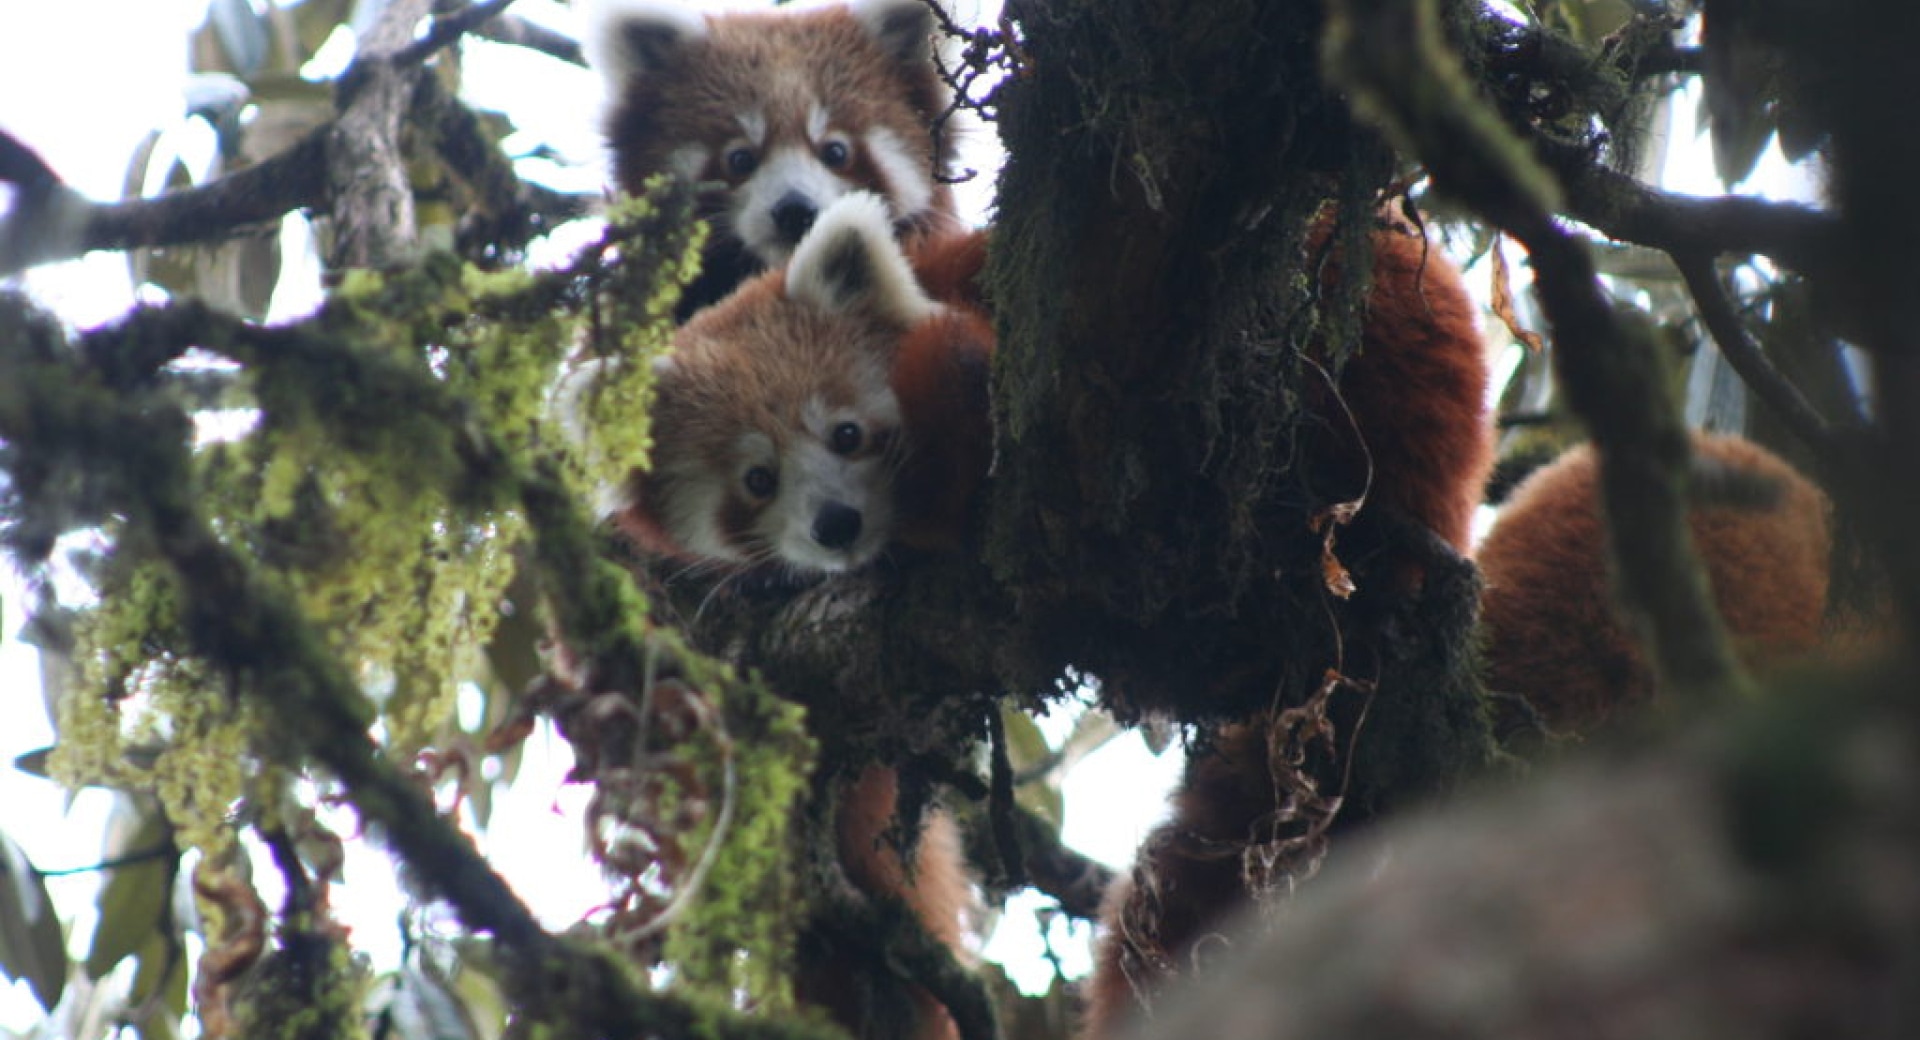 Press Release: Ecotrip travelers see increasing numbers of red pandas in Nepal.